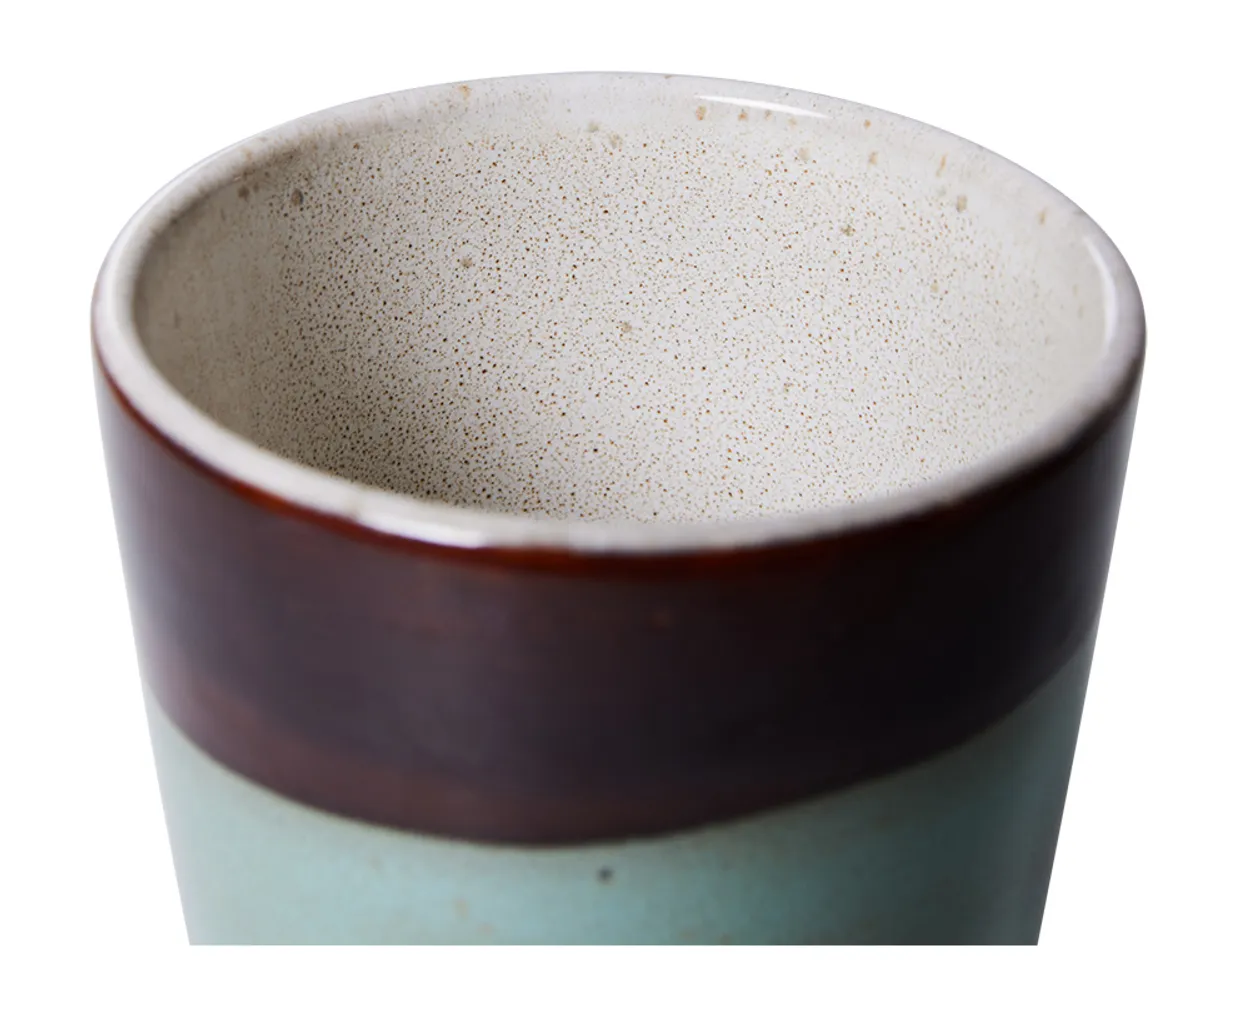 70s ceramics: latte mug, Patina